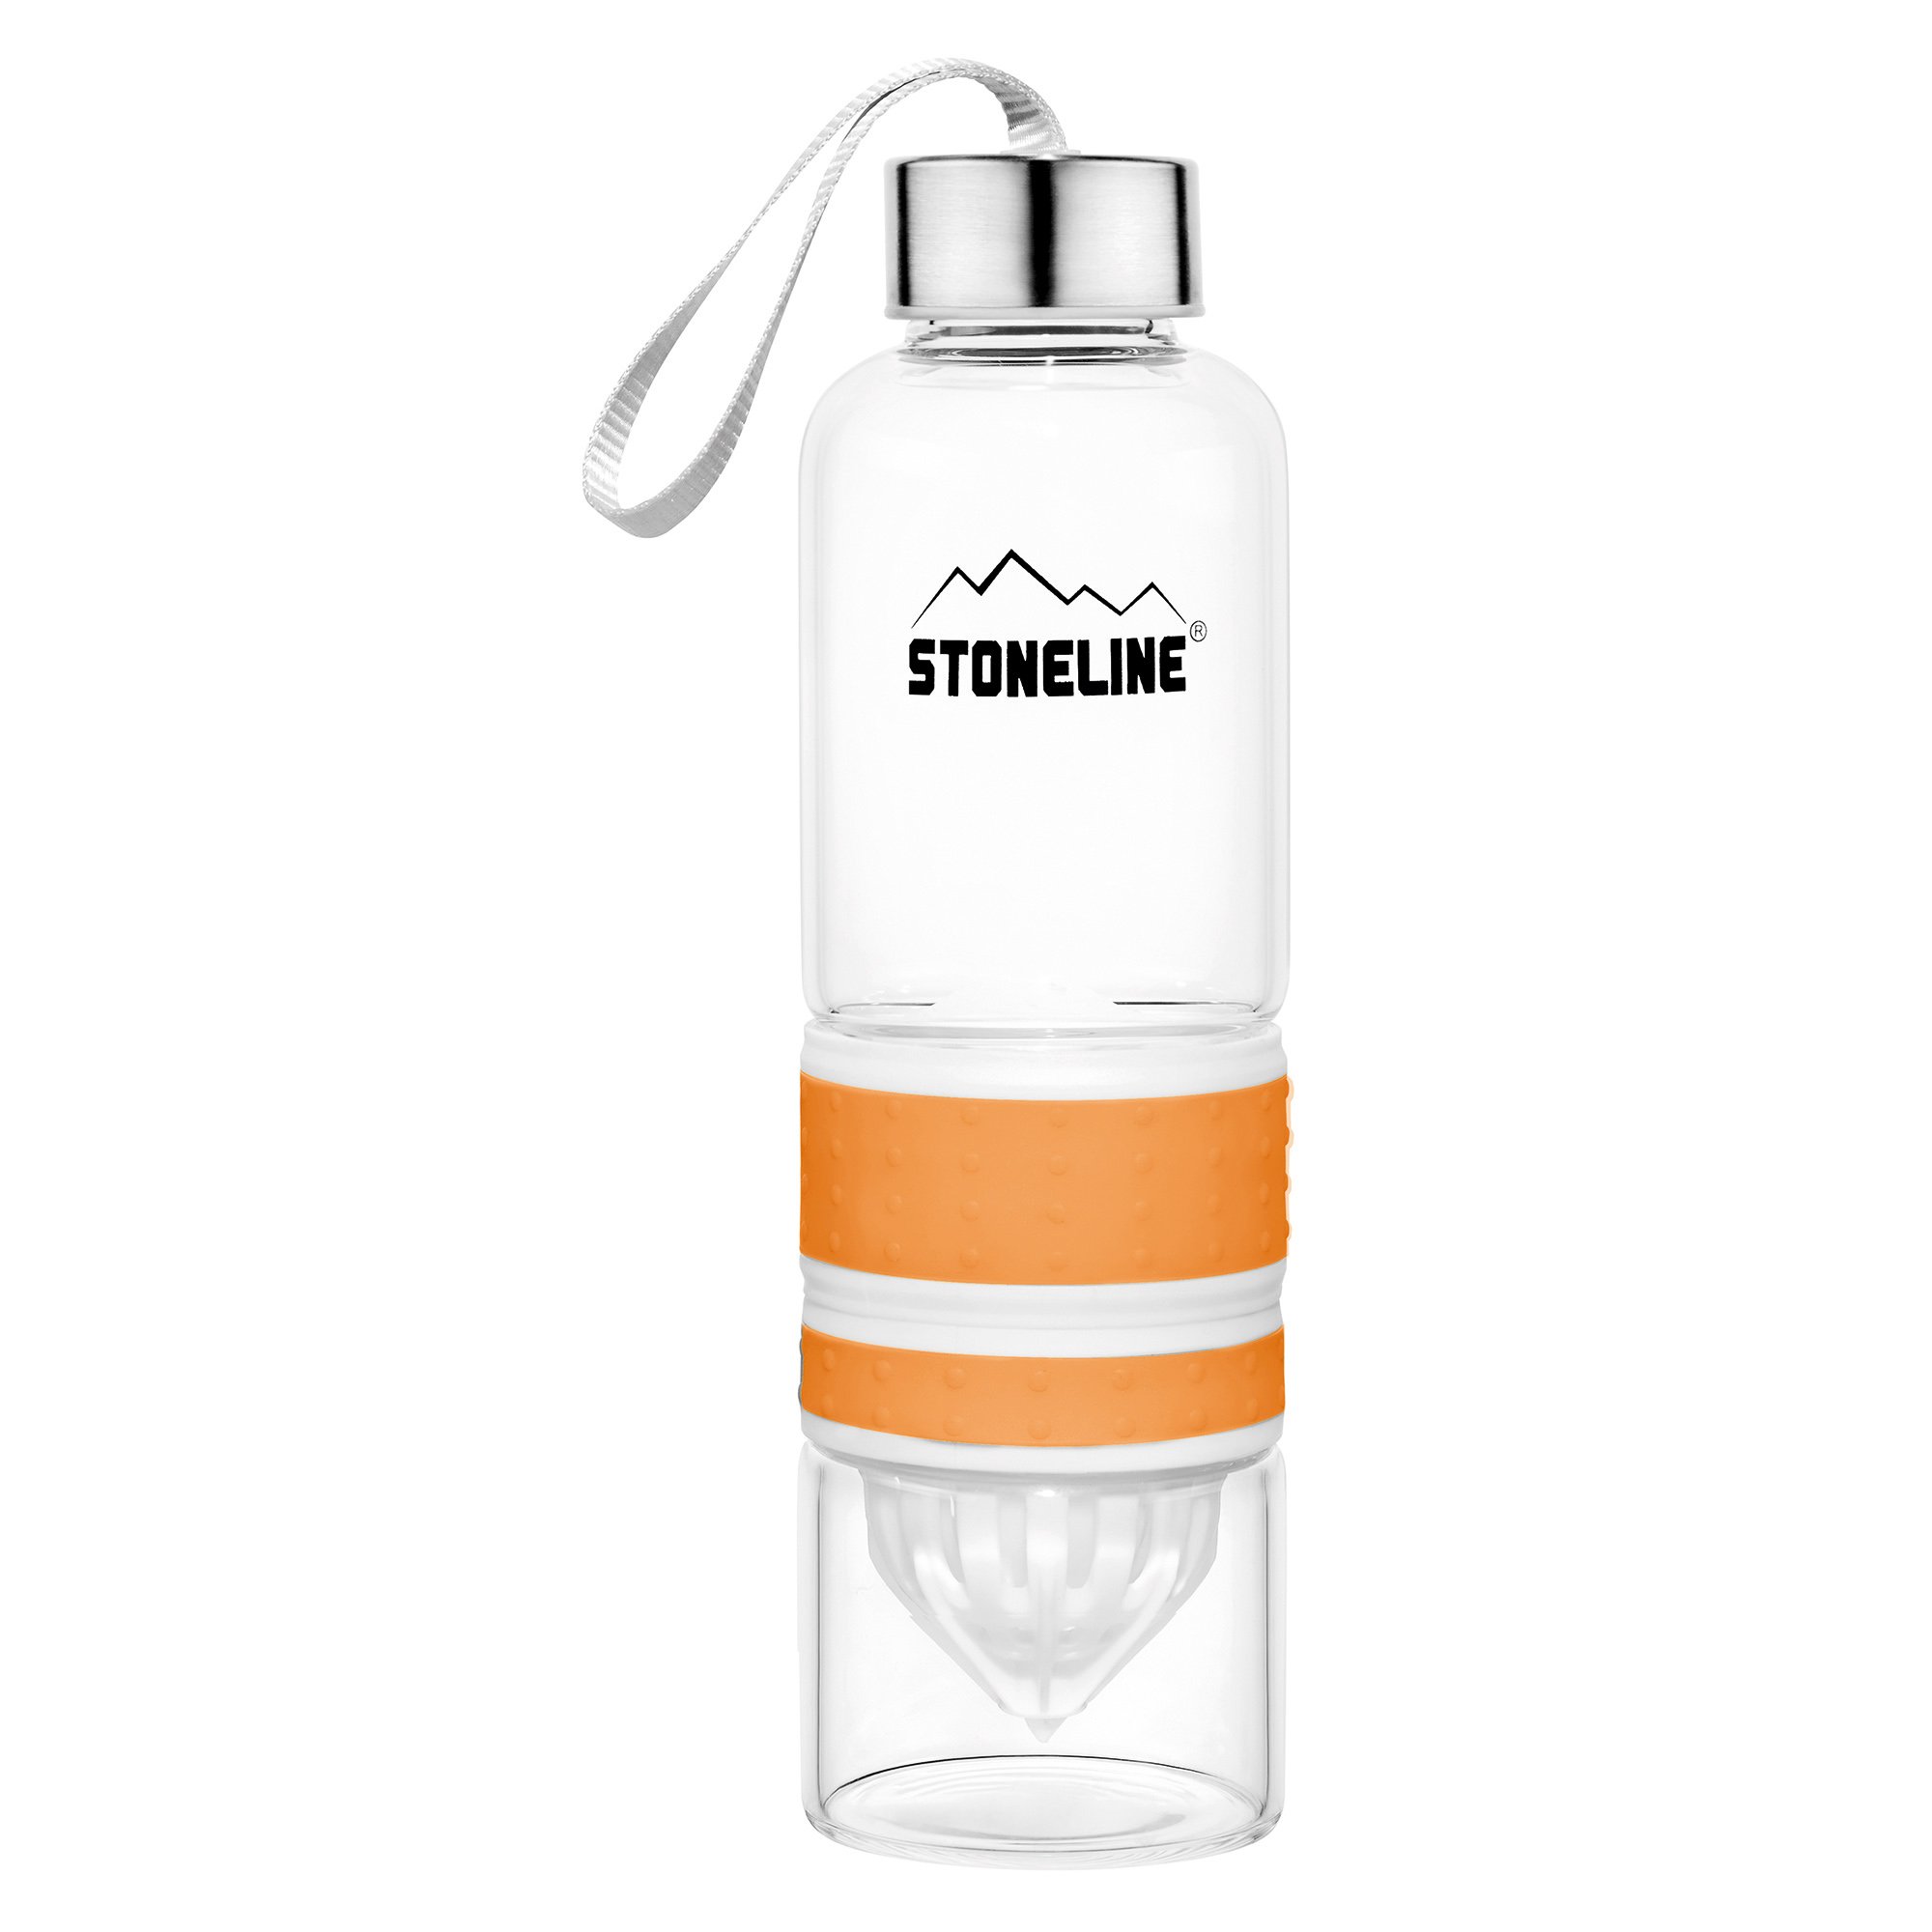 STONELINE® Botella 2 en 1 con exprimidor, naranja